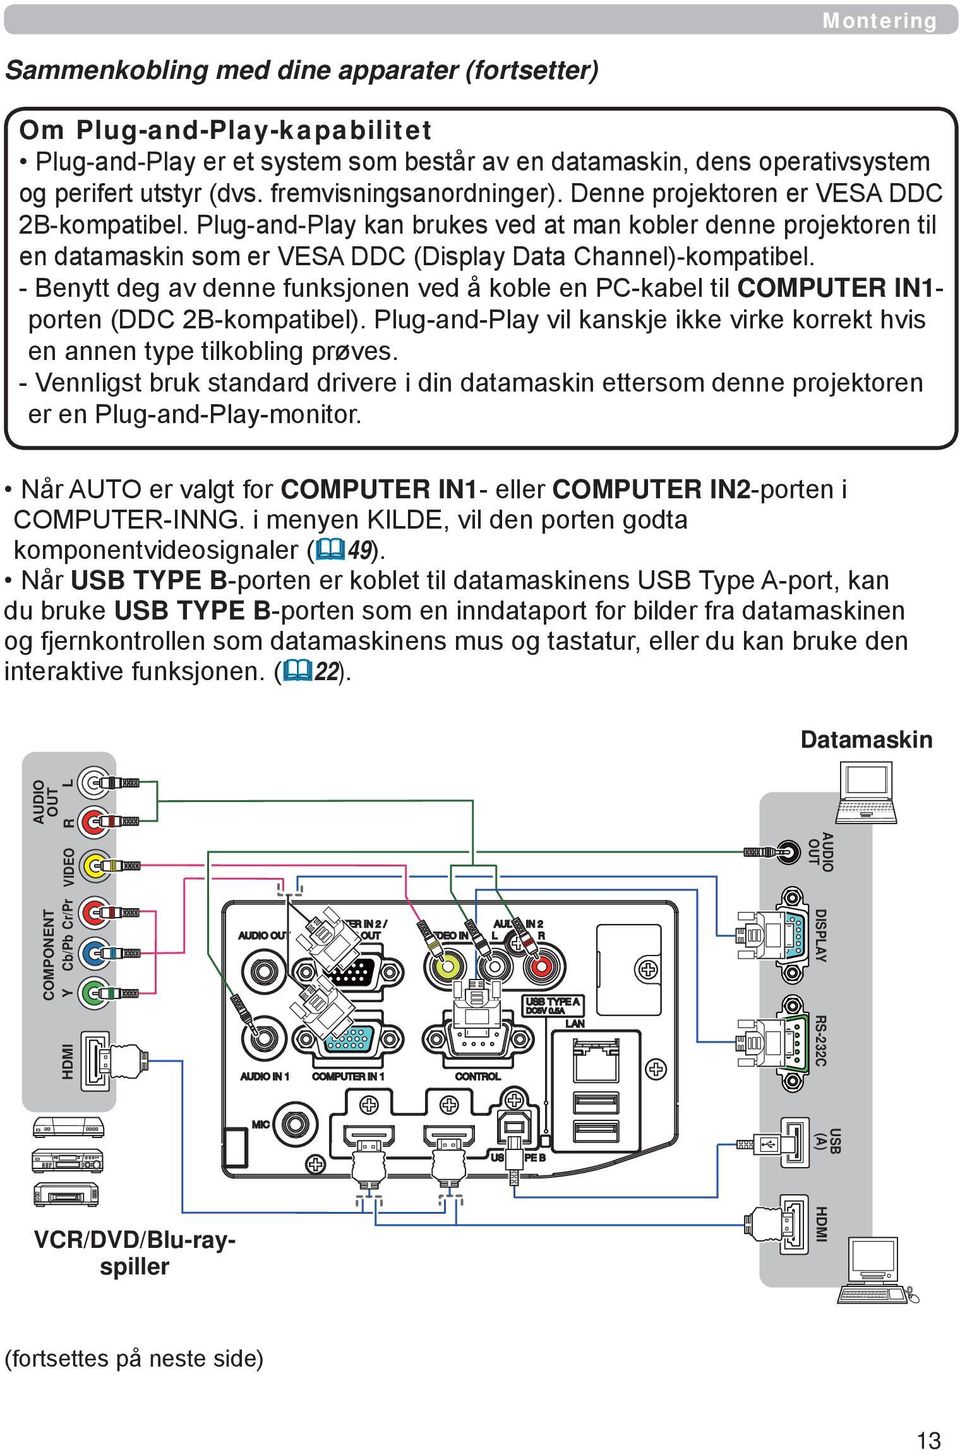 - Benytt deg av denne funksjonen ved å koble en PC-kabel til COMPUTER IN1- porten (DDC 2B-kompatibel). Plug-and-Play vil kanskje ikke virke korrekt hvis en annen type tilkobling prøves.